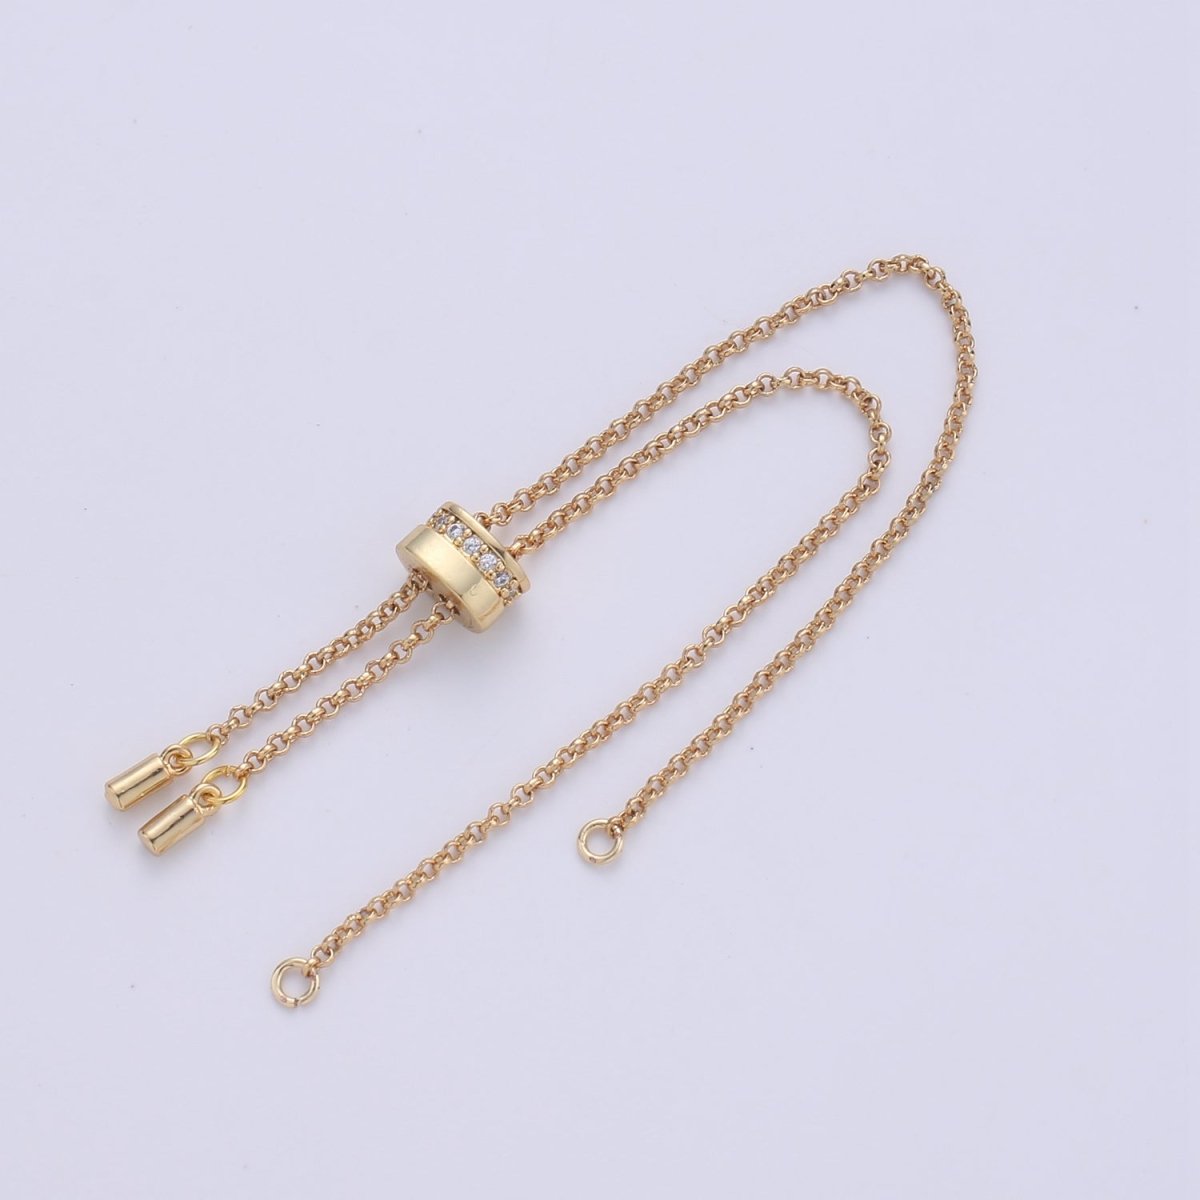 Half Finish Gold Filled Bracelet, Half Finish Chain For DIY Bracelet Gold / Silver / Rose Gold / Black- K-843,K-844,K-857,K-858 - DLUXCA